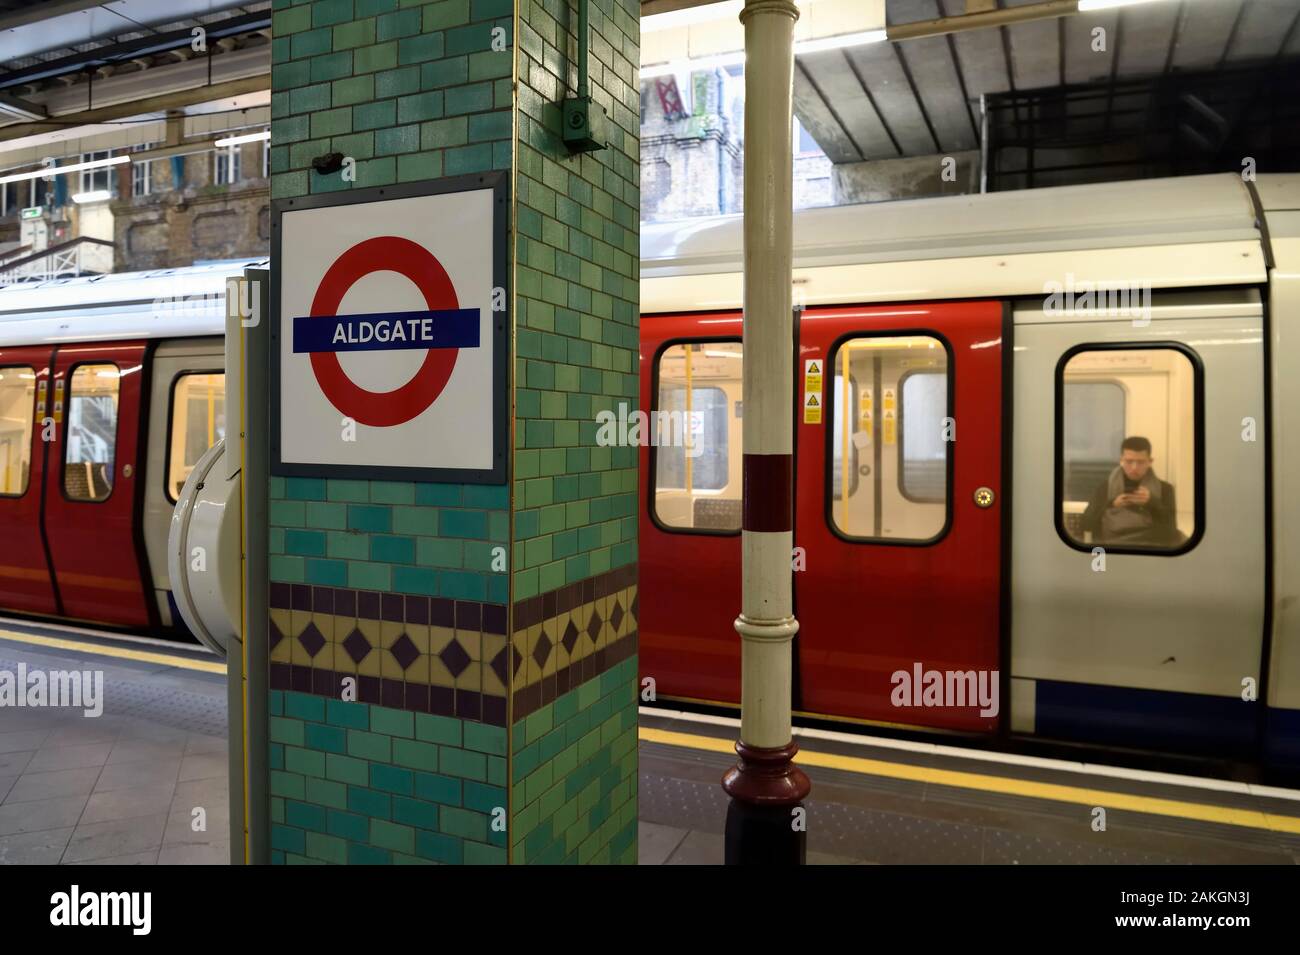 Regno Unito, Londra, Whitechapel district, stazione metropolitana (Metro) Aldgate Foto Stock